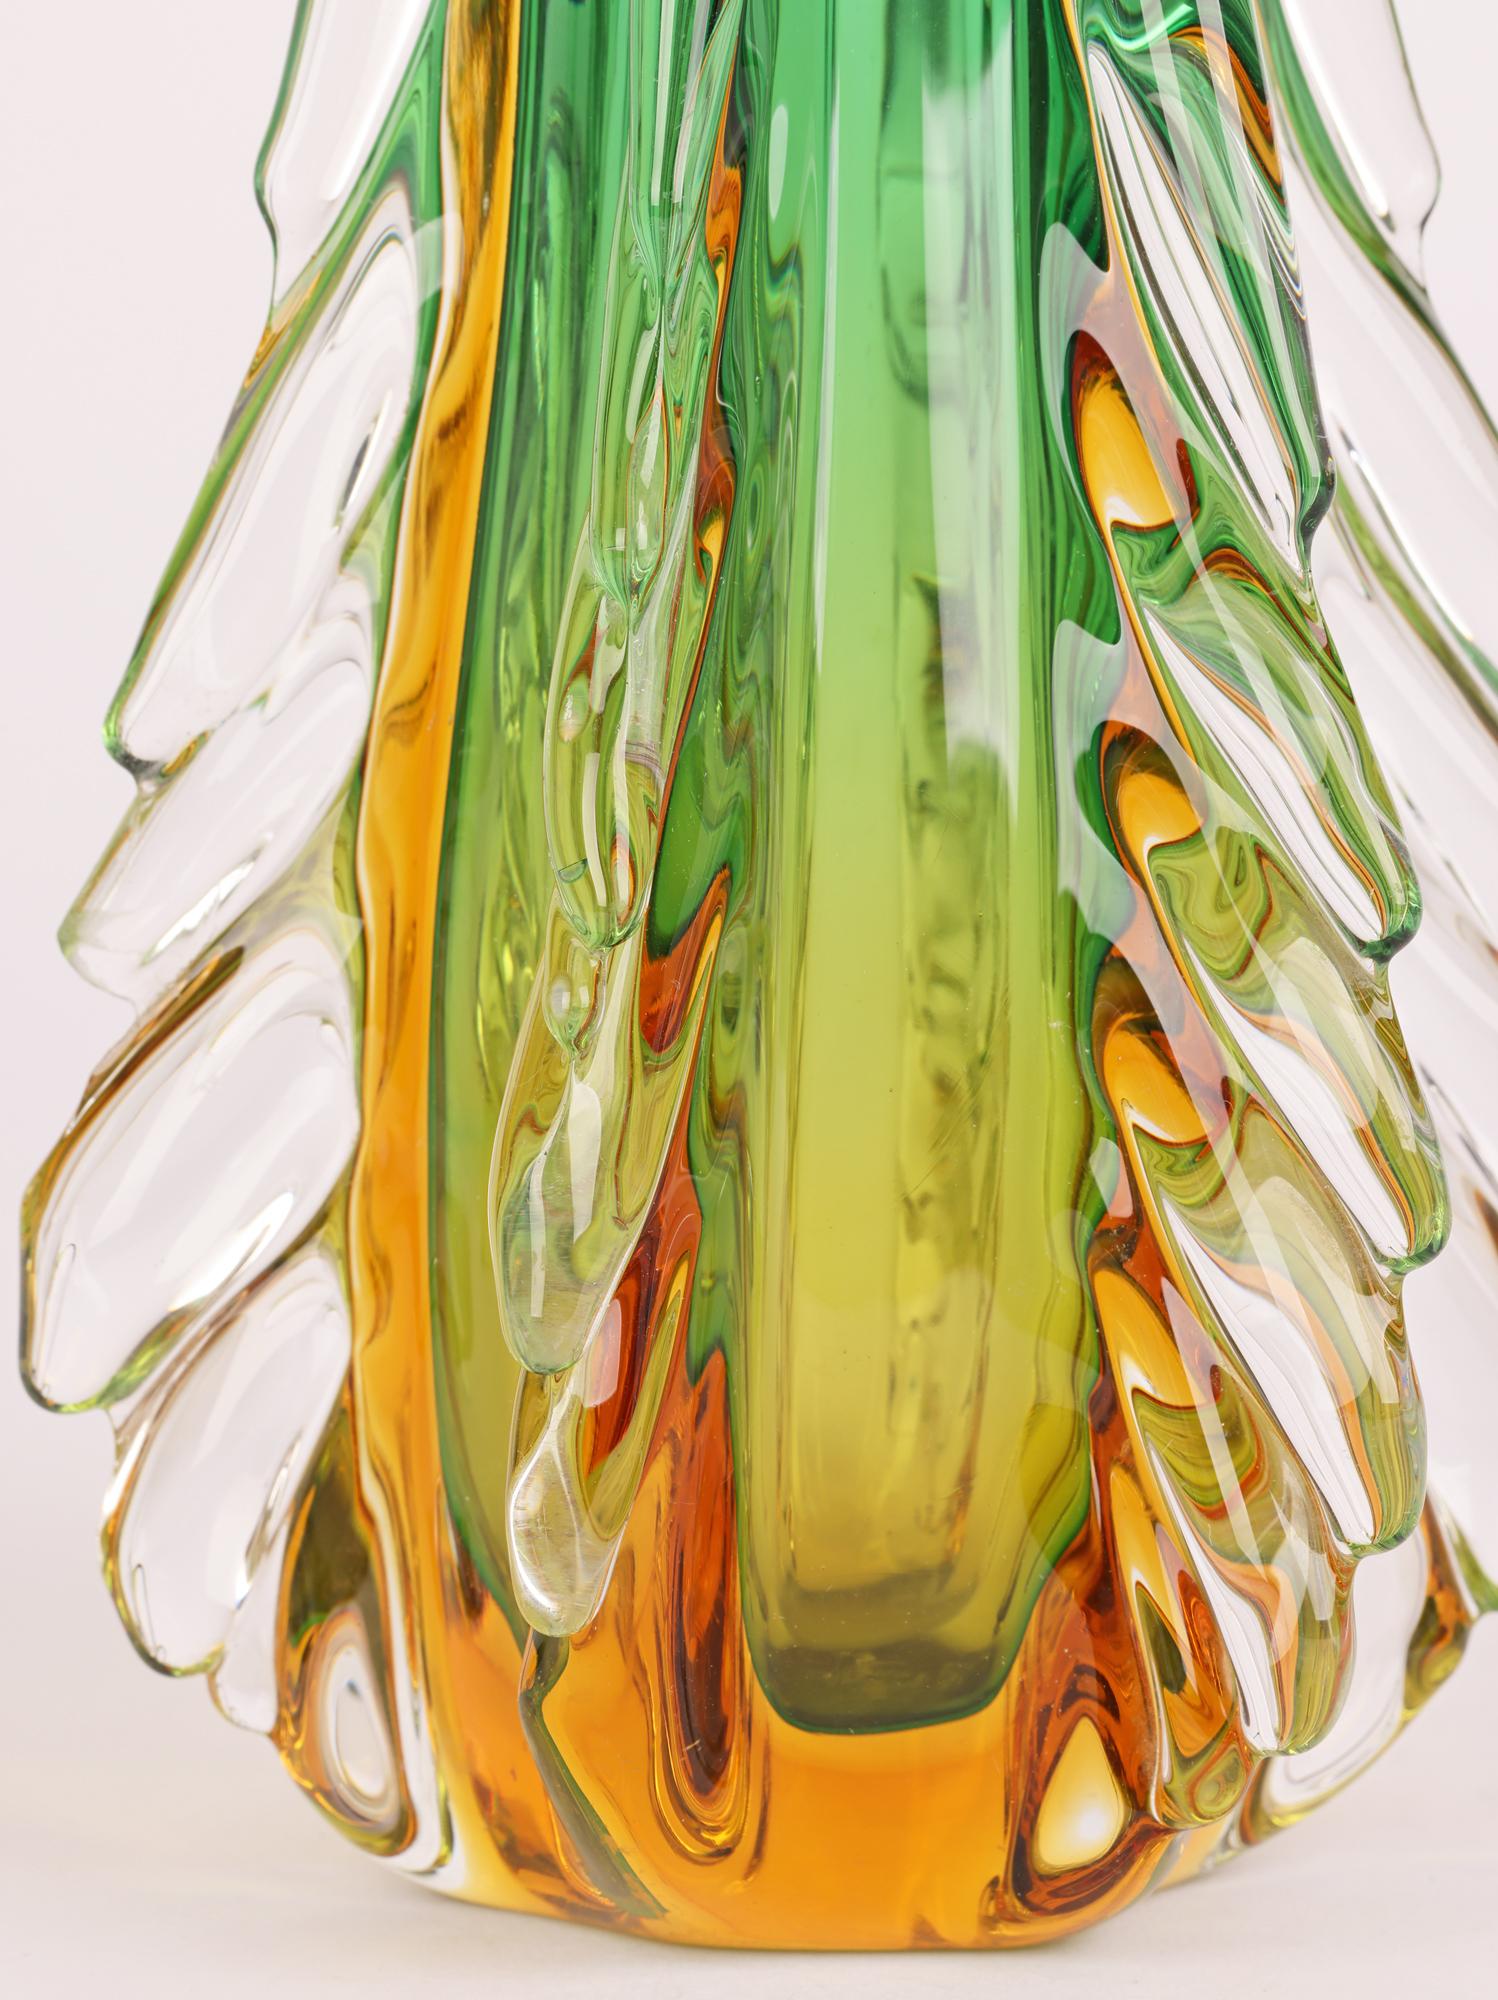 Italian Murano Sommerso Glass Vase by Flavio Poli for Seguso Vetri D’Arte 1